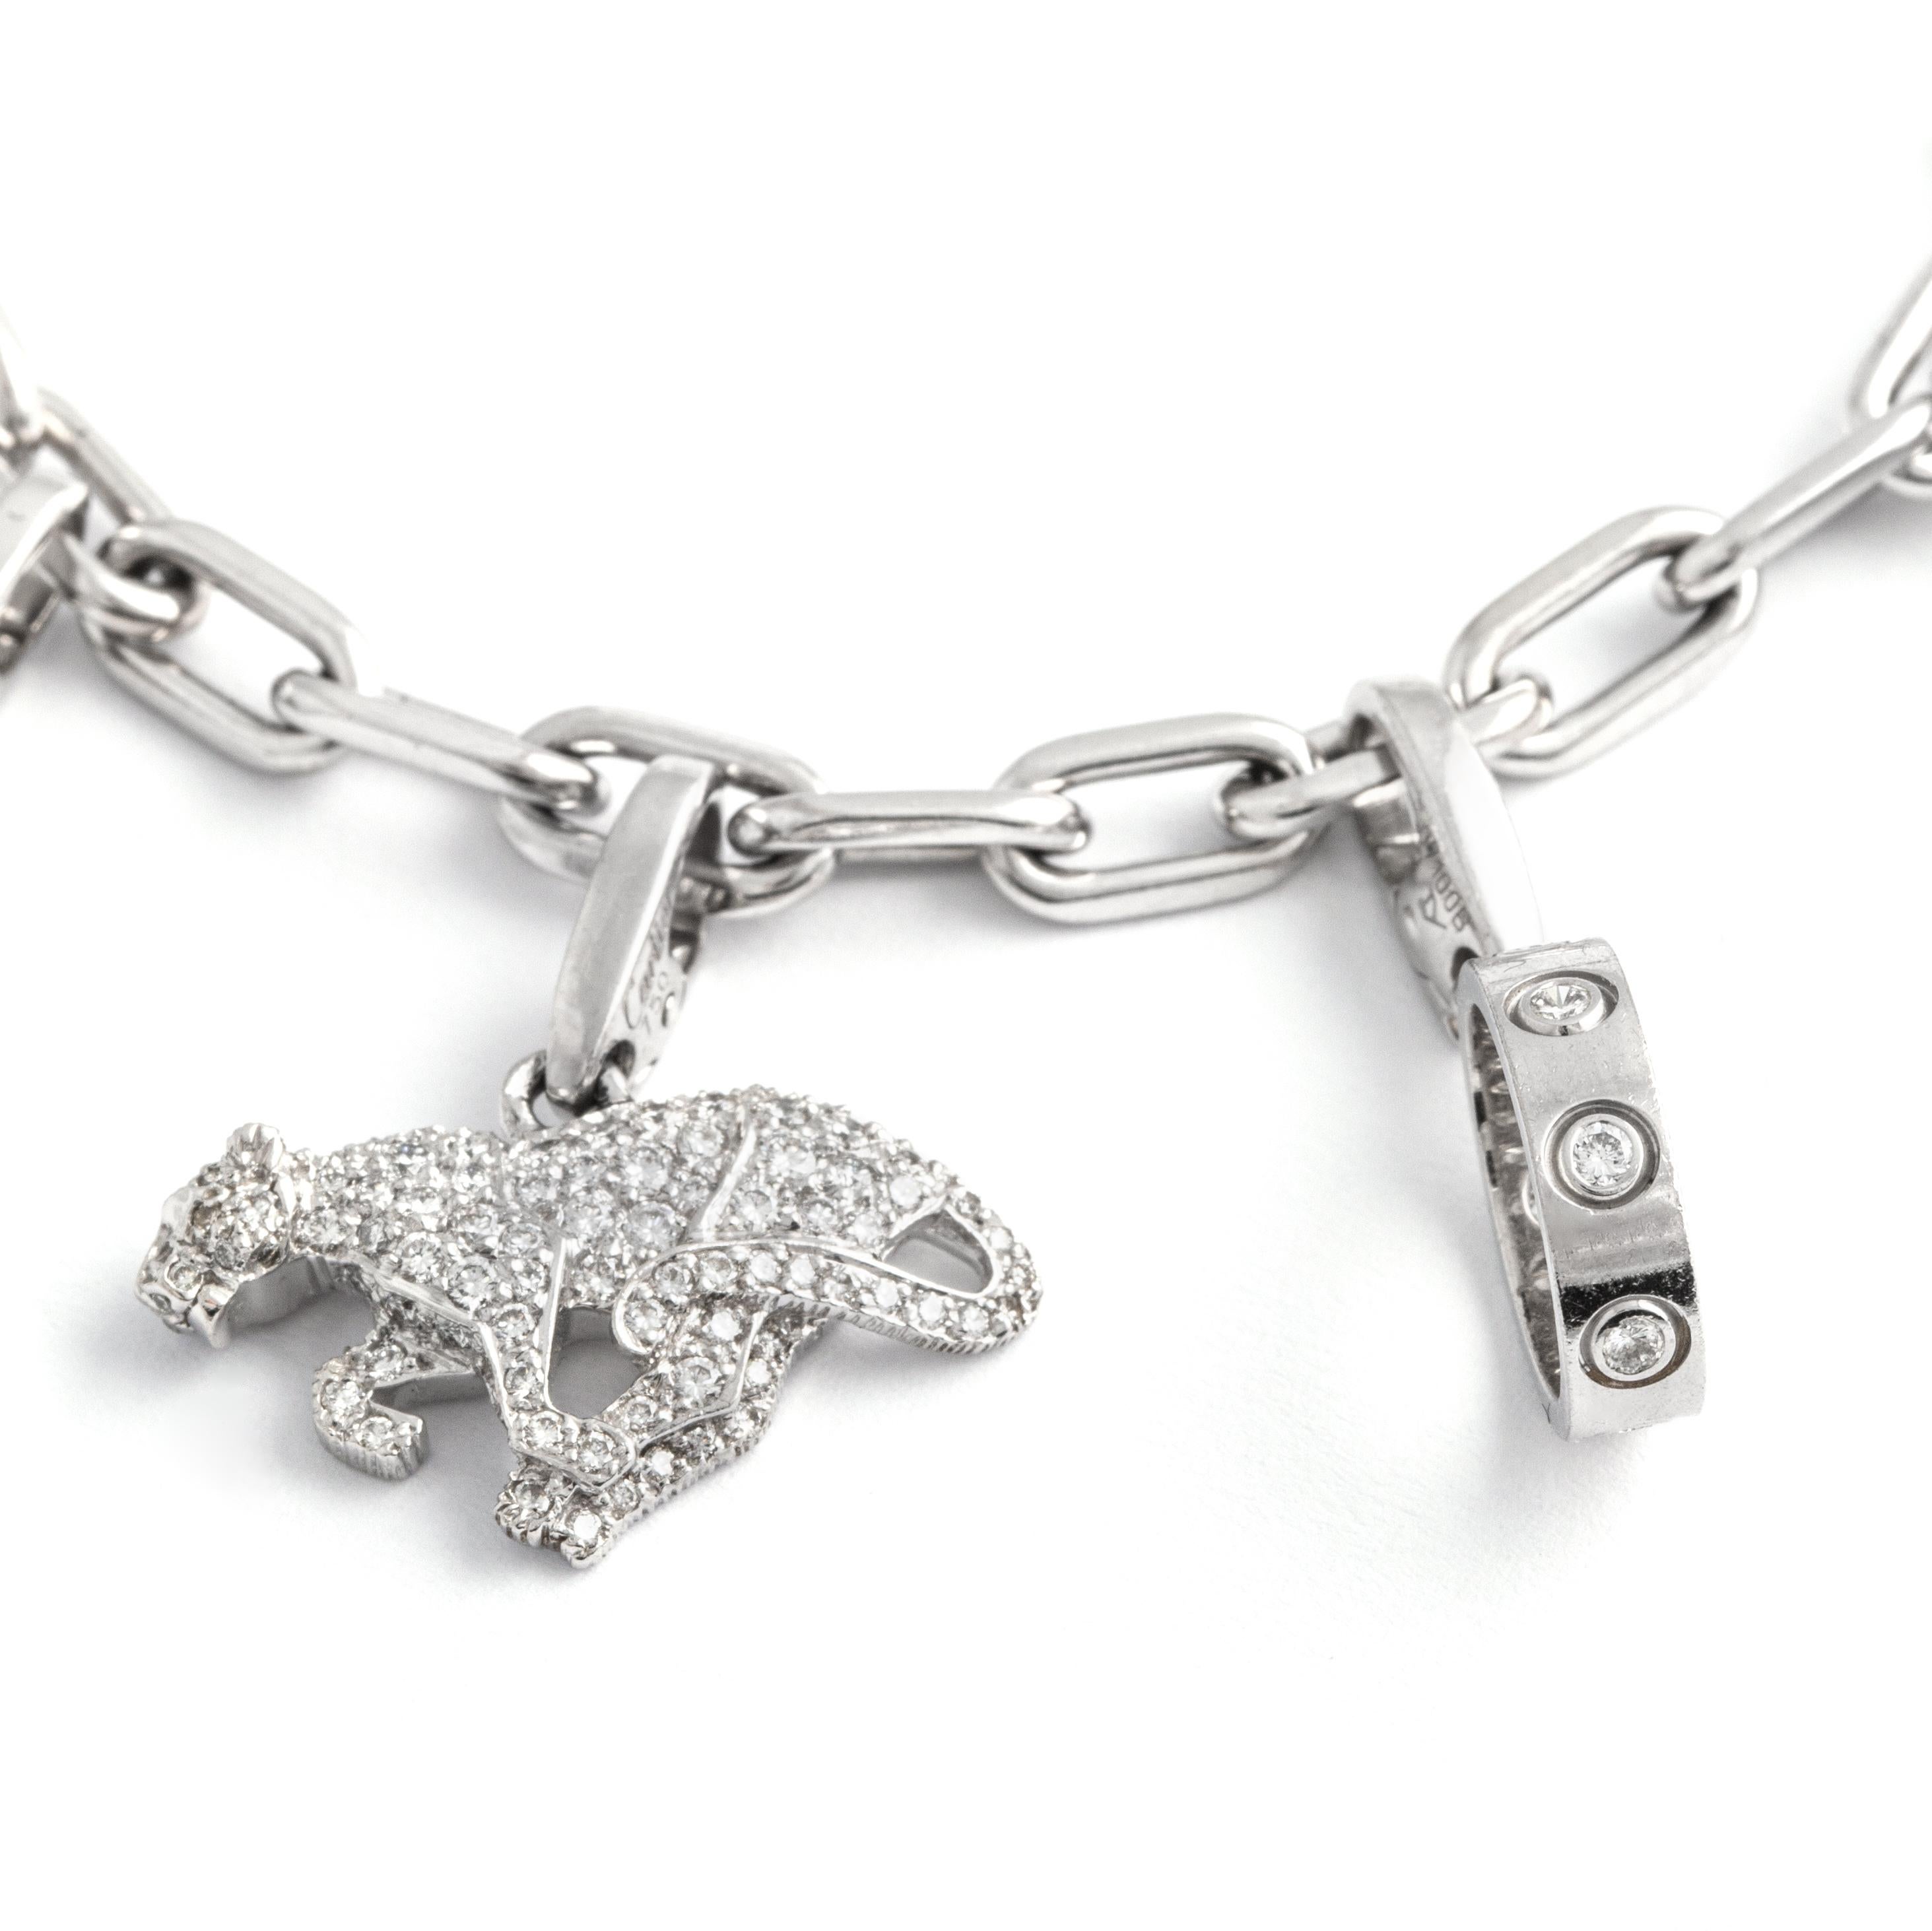 Women's or Men's Rare Cartier Diamond Set Charm Bracelet White Gold 18K For Sale